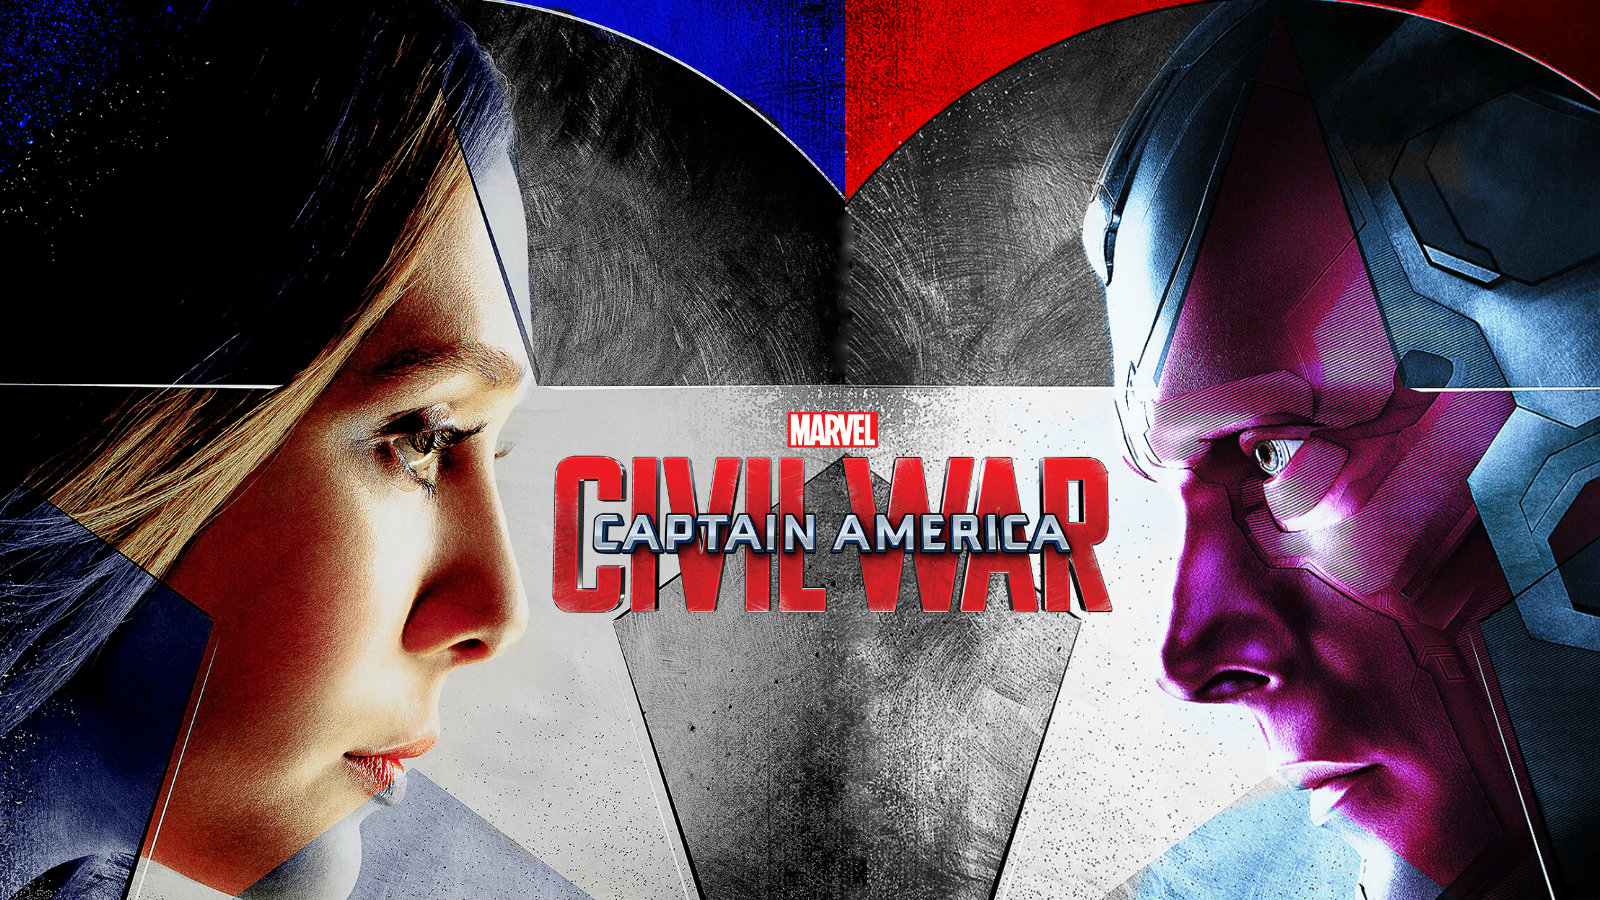 Civil War - Captain America Civil War Vision Poster - HD Wallpaper 